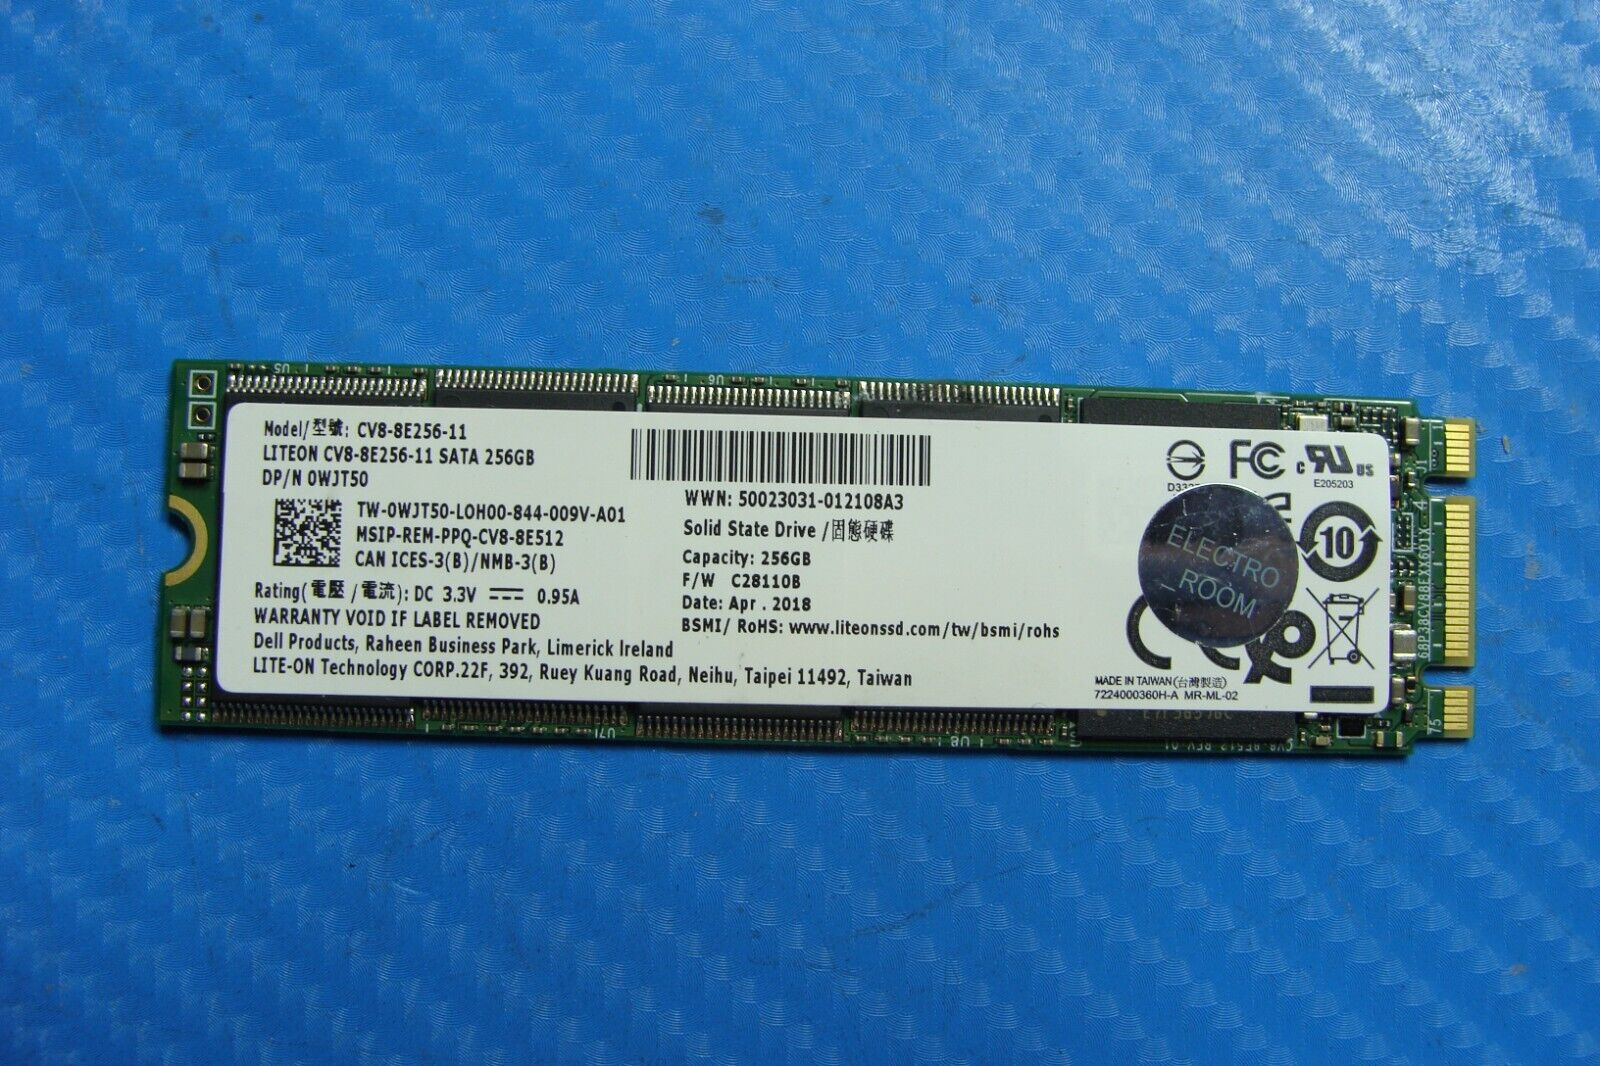 Dell E5570 Lite-On 256Gb Solid State Drive SSD Sata M.2 wjt50 cv8-8e256-11 